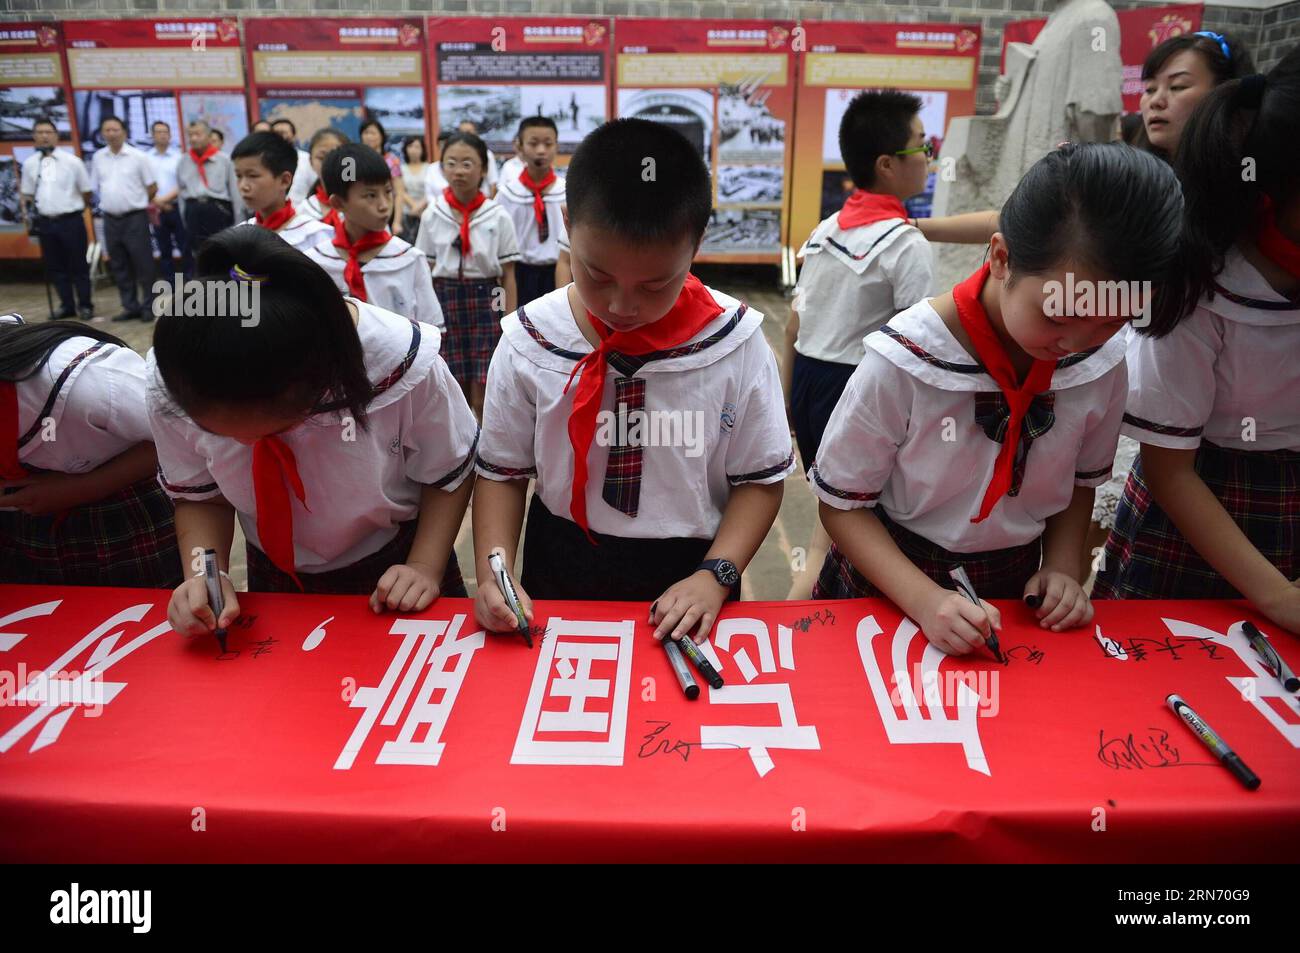 (150812) -- NANCHANG, 12. August 2015 -- Schüler unterschreiben ihre Namen auf einem Banner, während sie die ehemalige Residenz von Mei Ru ao, dem chinesischen Richter am Internationalen Militärtribunal für den Fernen Osten, besuchen. während einer Aktivität zum 70. Jahrestag des Sieges im chinesischen Volkskrieg gegen die japanische Aggression im Bezirk Qingyunpu in Nanchang, ostchinesische Provinz Jiangxi, 12. August 2015. ) (xcf) CHINA-JIANGXI-NANCHANG-MEMORATION-ACTIVITY (CN) ZhouxMi PUBLICATIONxNOTxINxCHN 150812 Nanchang Aug 12 2015 Schüler unterschreiben ihre Namen AUF einem Banner, während sie das ehemalige Residenc besuchen Stockfoto